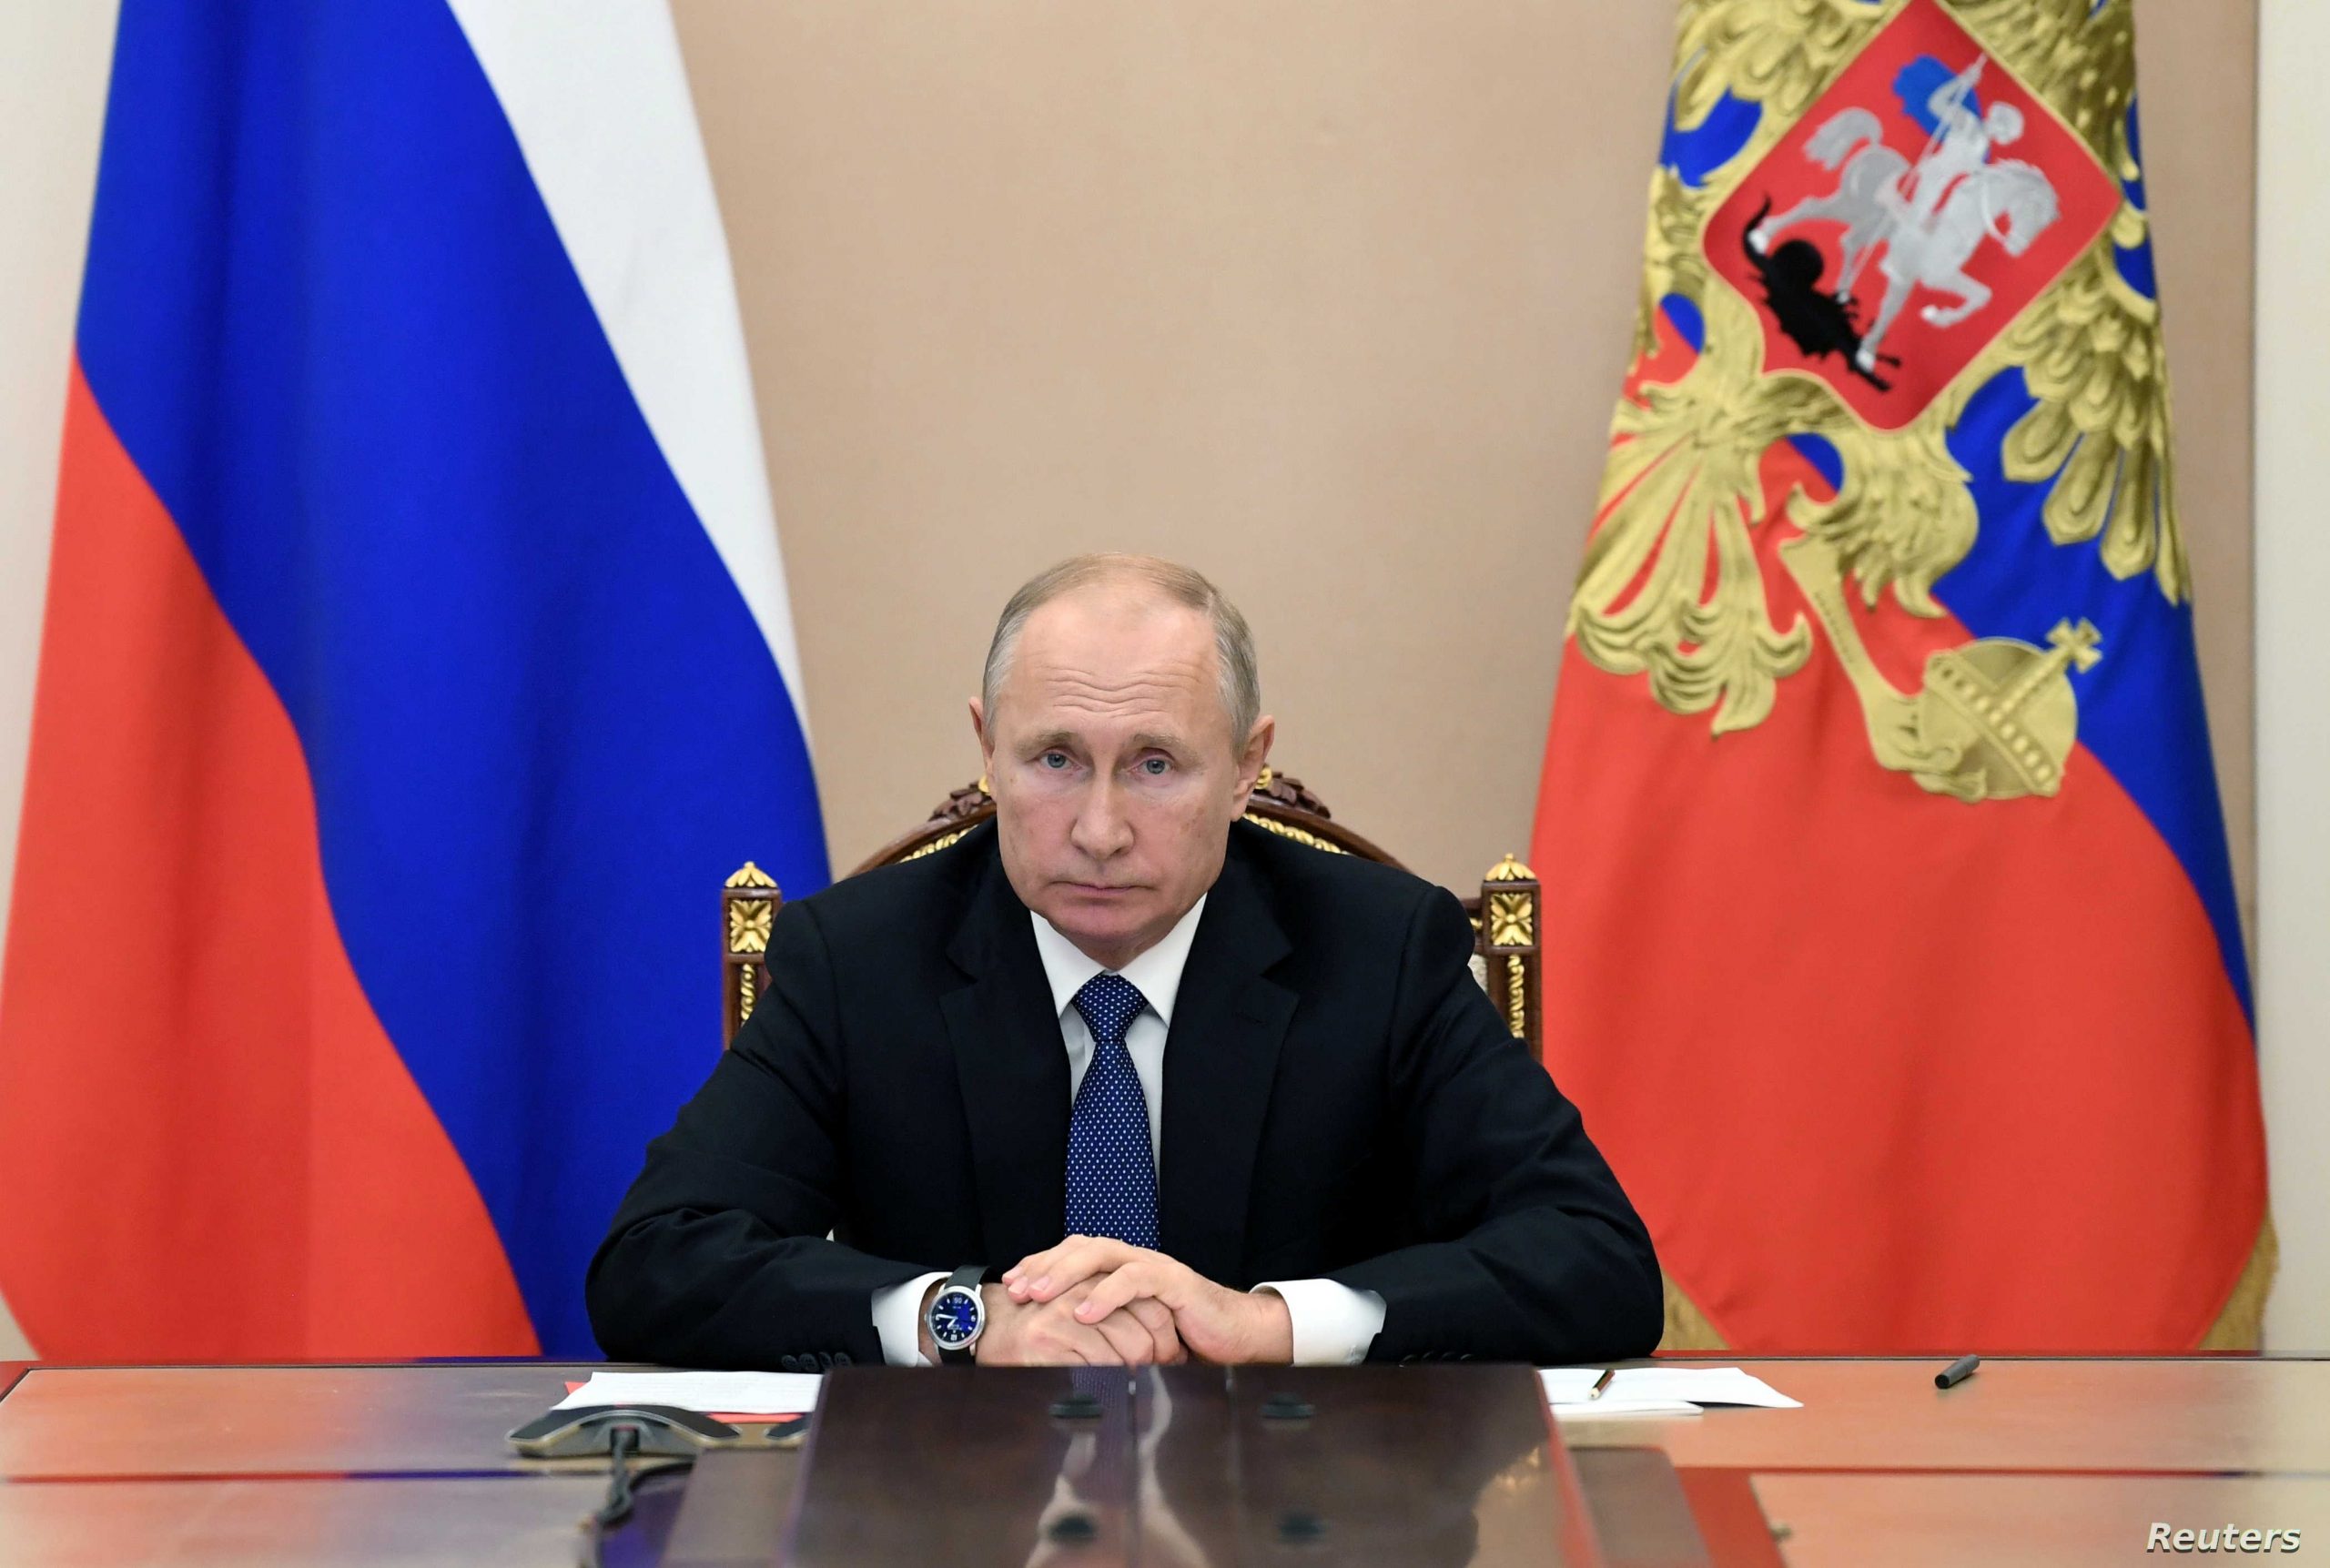 بوتين يبدي استعداده لإجراء محادثات مع الرئيس الأوكراني بشرط